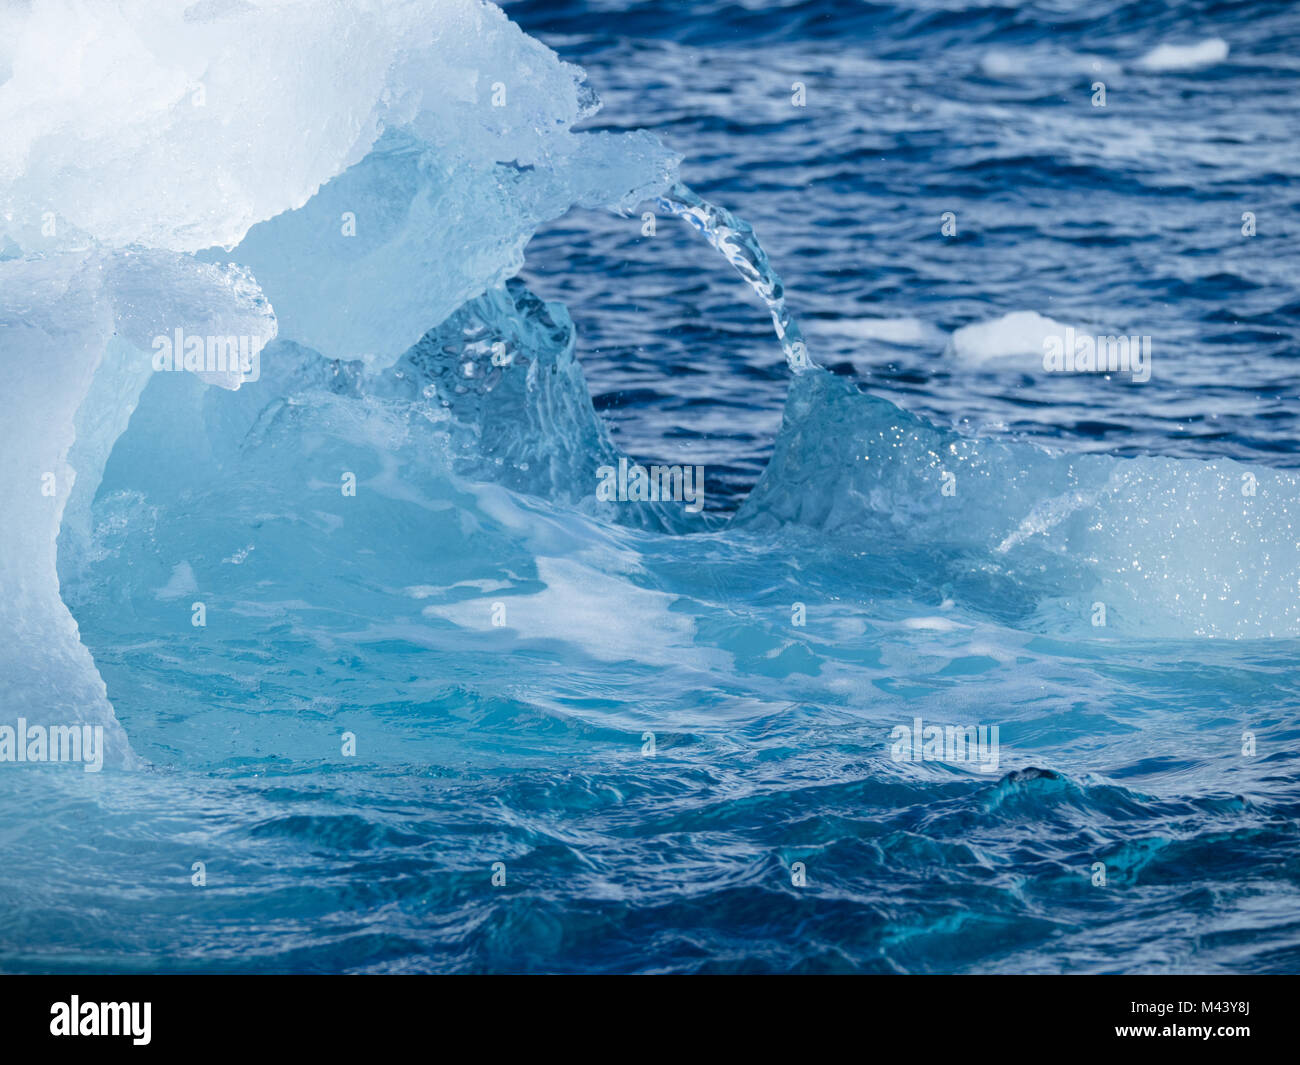 Un léger, moyen et bleu foncé iceberg flottant dans l'eau gris foncé de l'océan Austral au son de l'Antarctique. Ciel couvert est ci-dessus. Banque D'Images